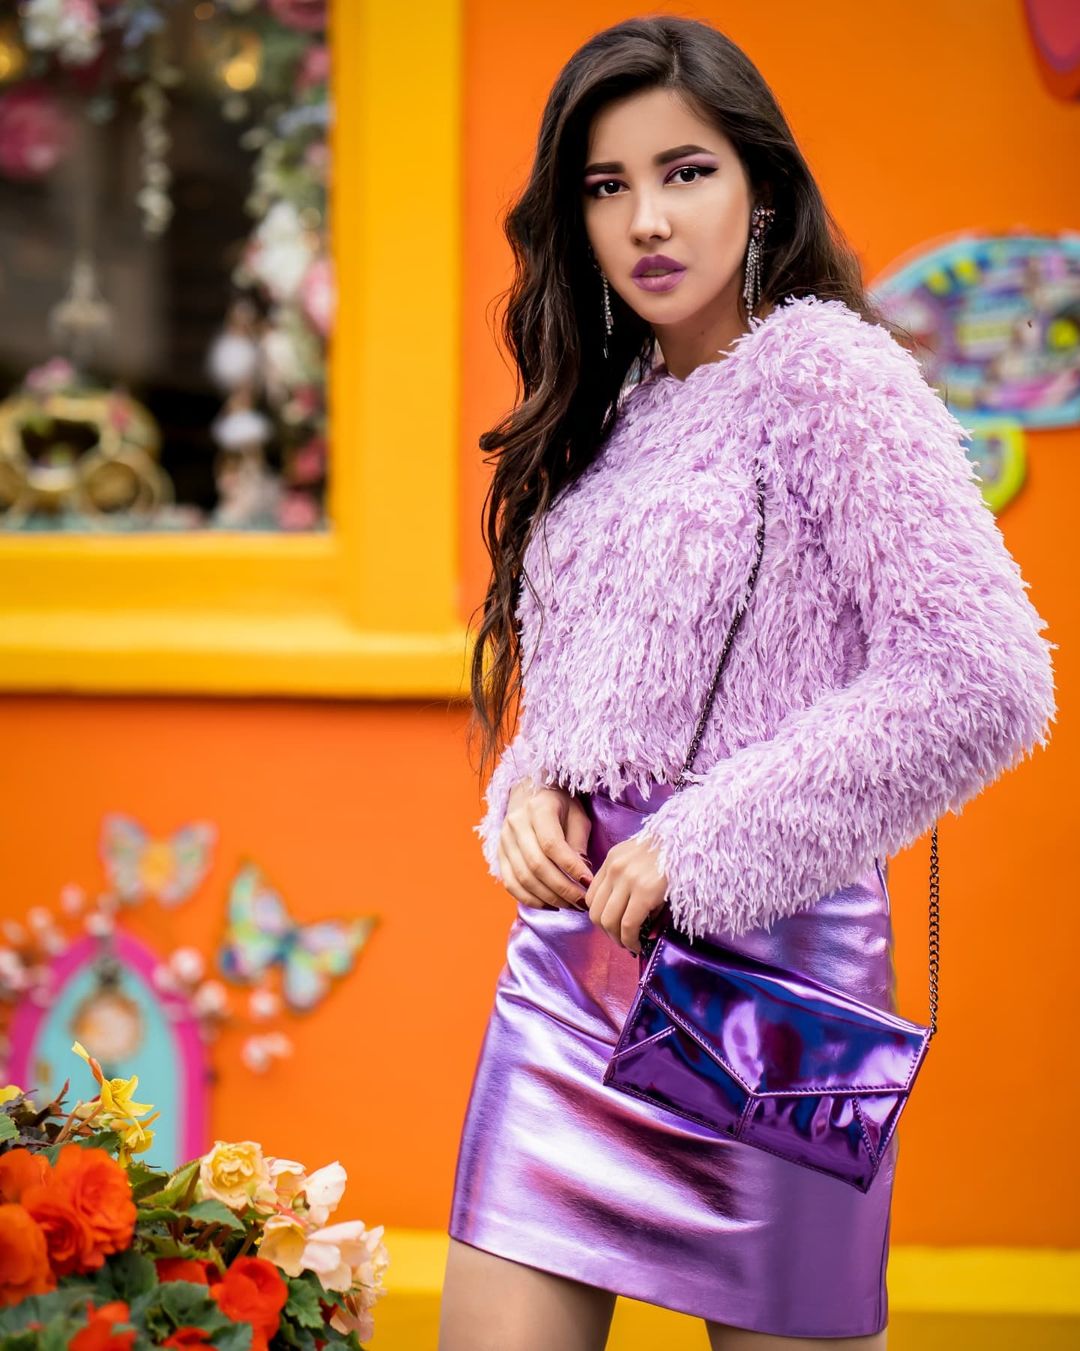 How to Style Purple Skirt 15 Ladylike Outfit Ideas  FMagcom